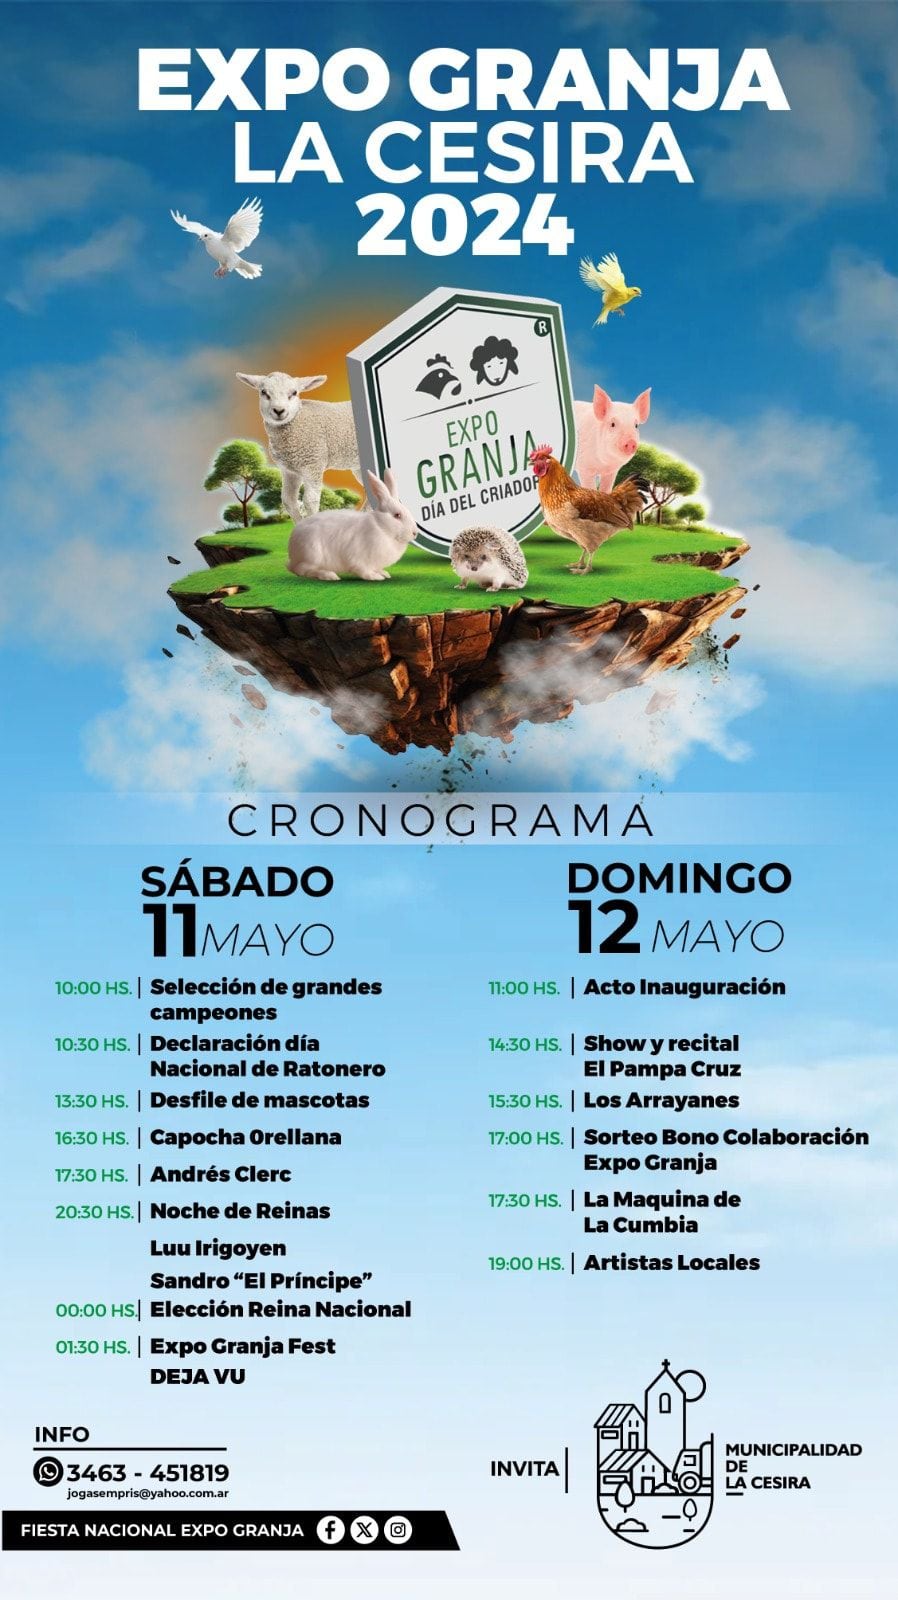 The schedule of Expo Granja activities.